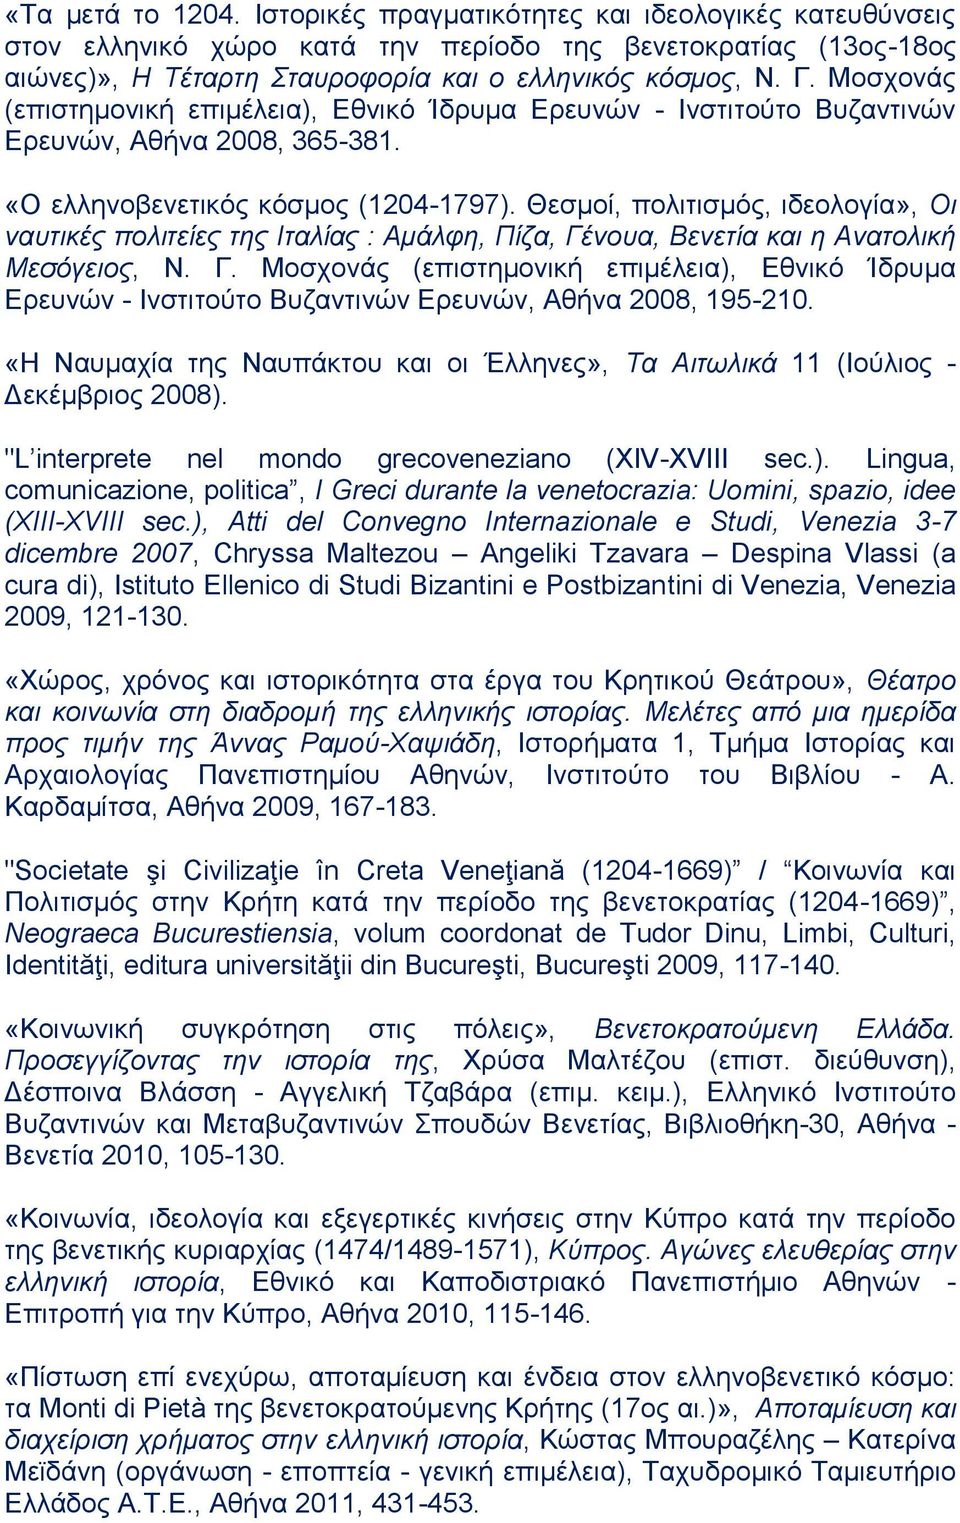 Θεσμοί, πολιτισμός, ιδεολογία», Οι ναυτικές πολιτείες της Ιταλίας : Αμάλφη, Πίζα, Γένουα, Βενετία και η Ανατολική Μεσόγειος, Ν. Γ. Μοσχονάς (επιστημονική επιμέλεια), Εθνικό Ίδρυμα Ερευνών - Ινστιτούτο Βυζαντινών Ερευνών, Αθήνα 2008, 195-210.